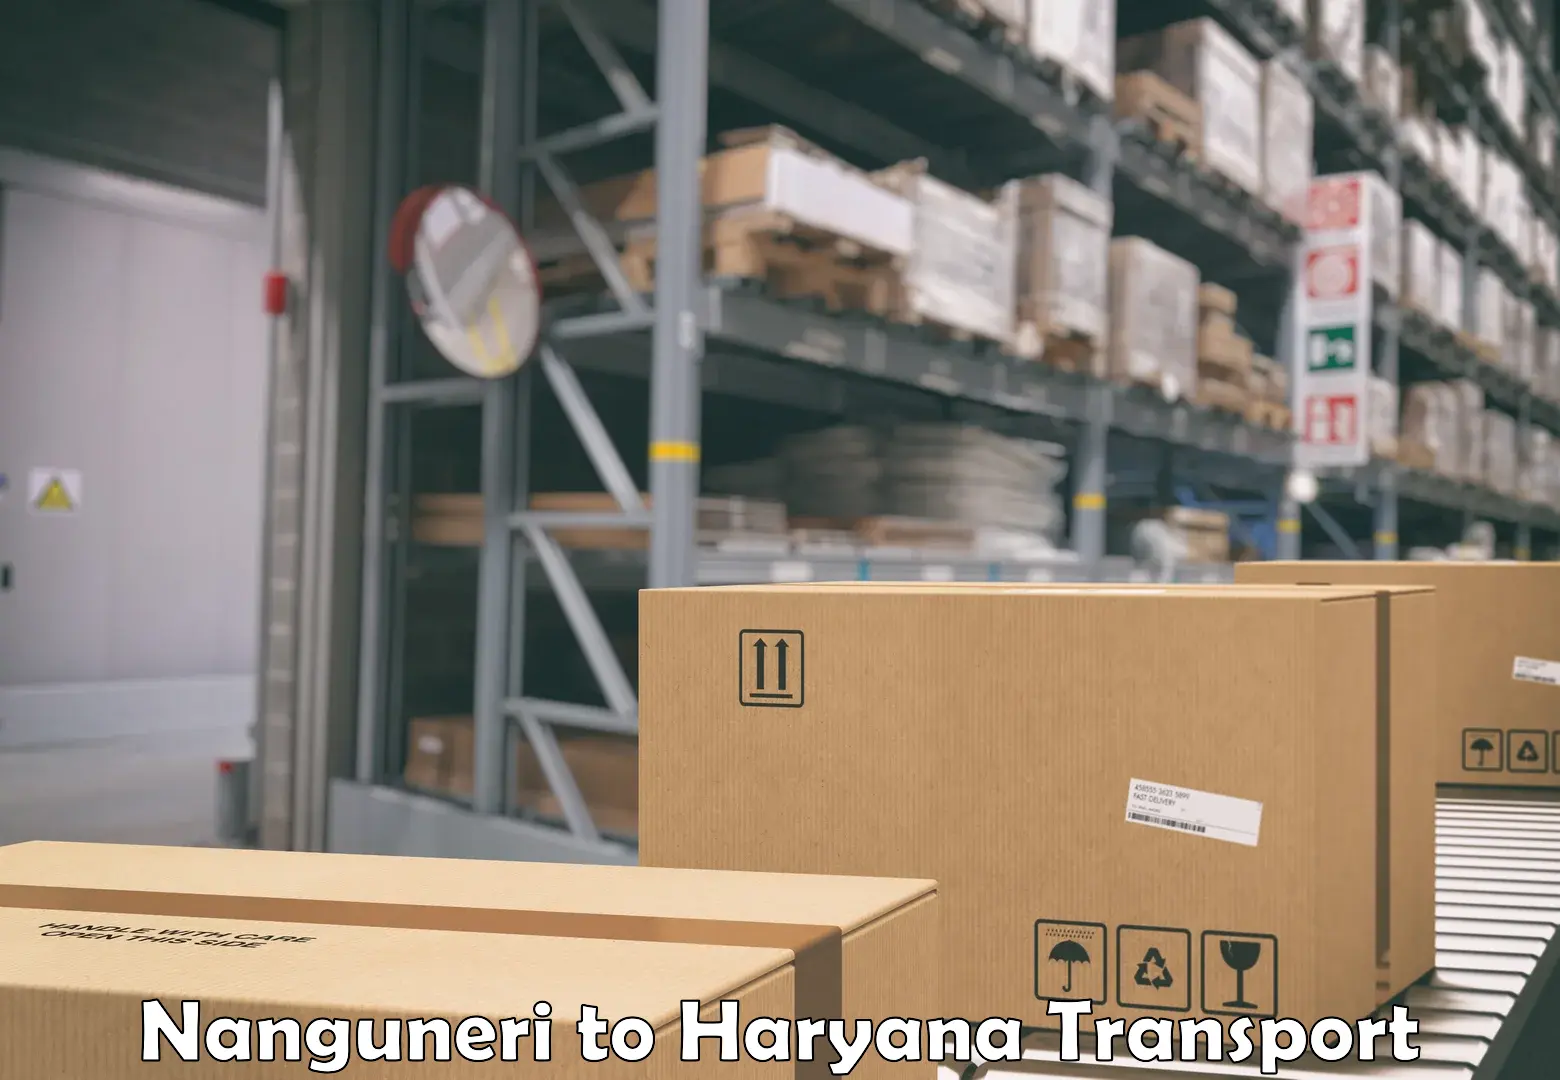 Vehicle transport services Nanguneri to NCR Haryana